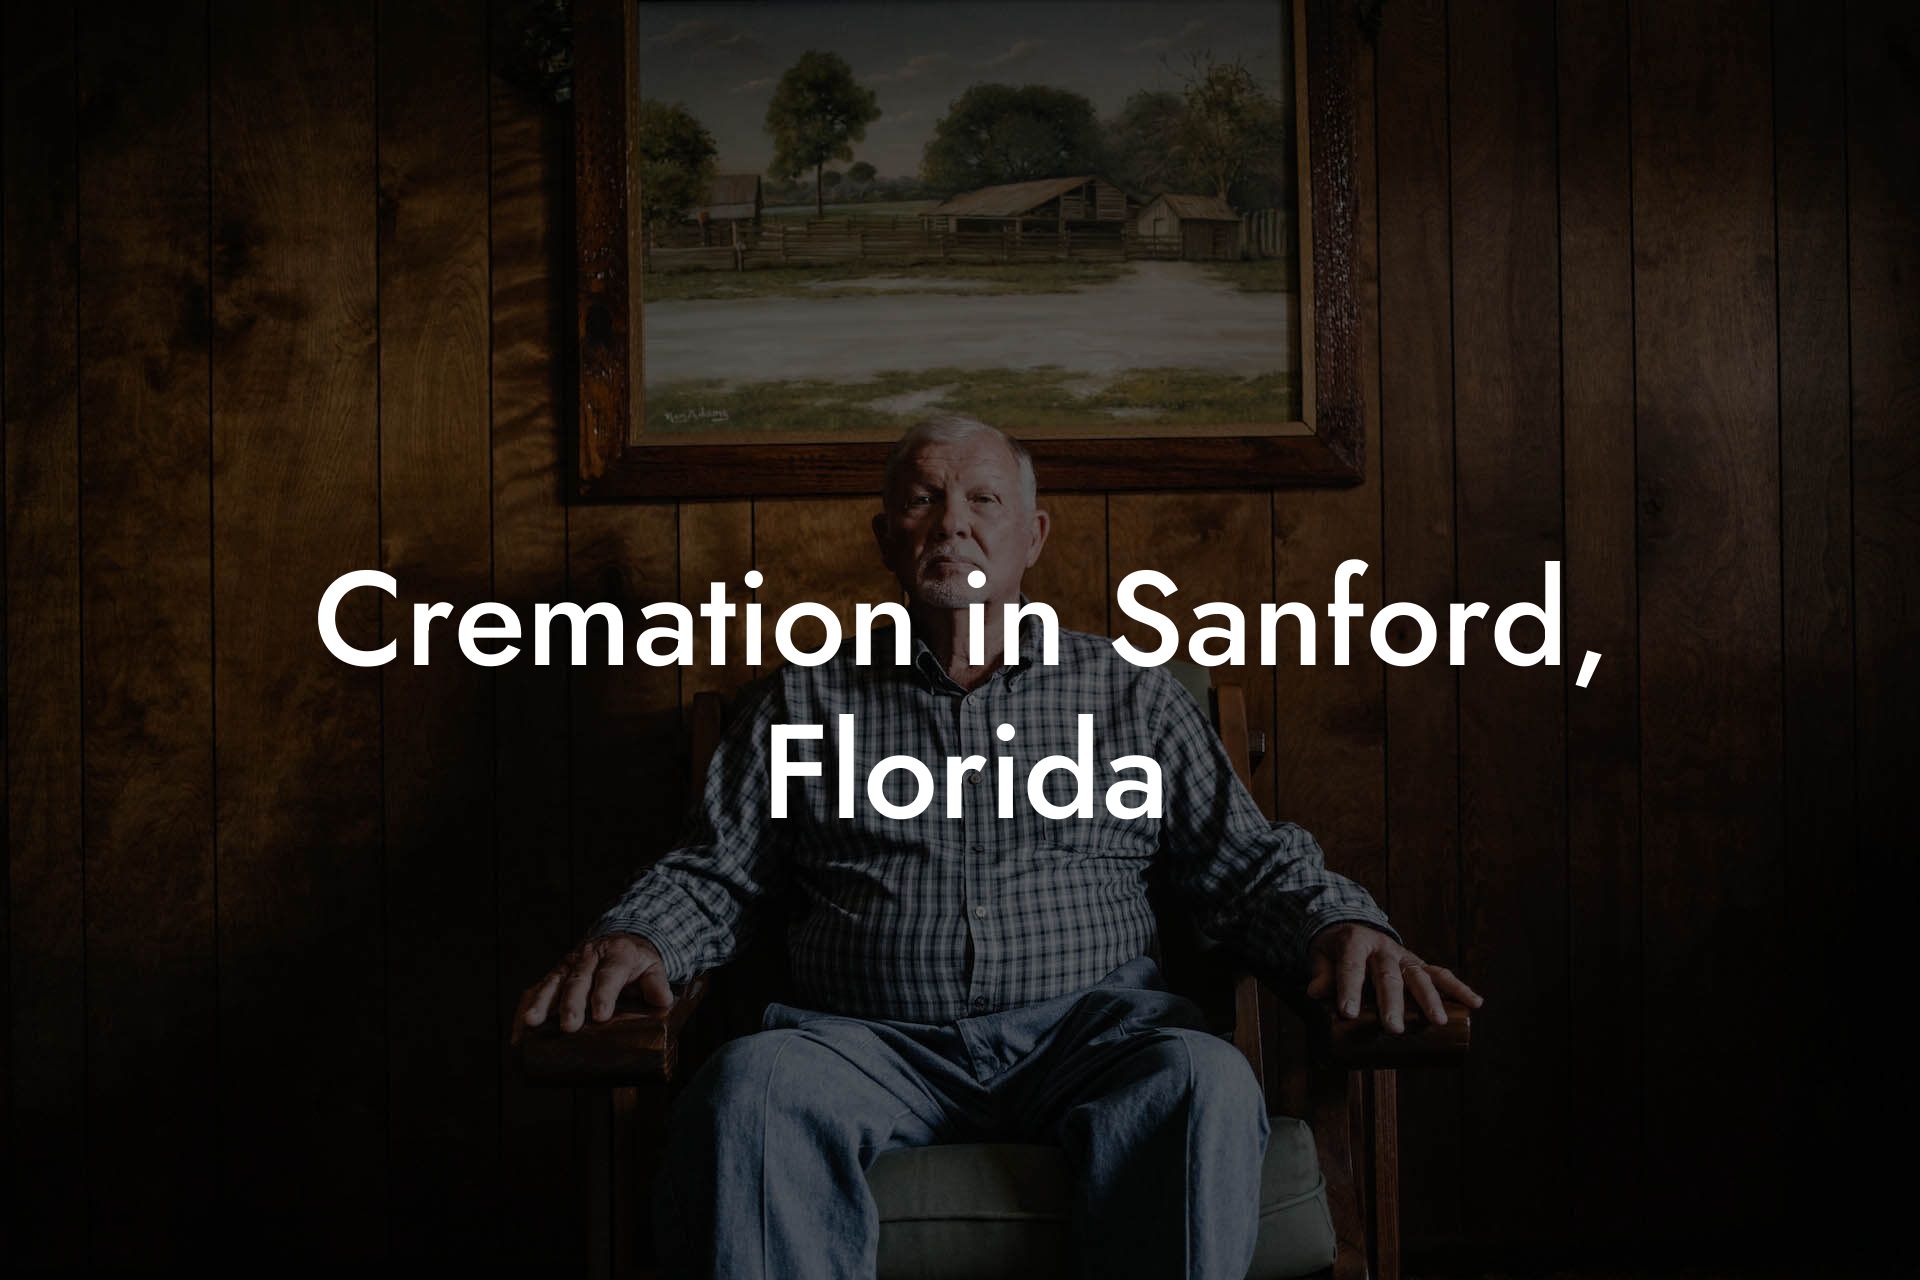 Cremation in Sanford, Florida